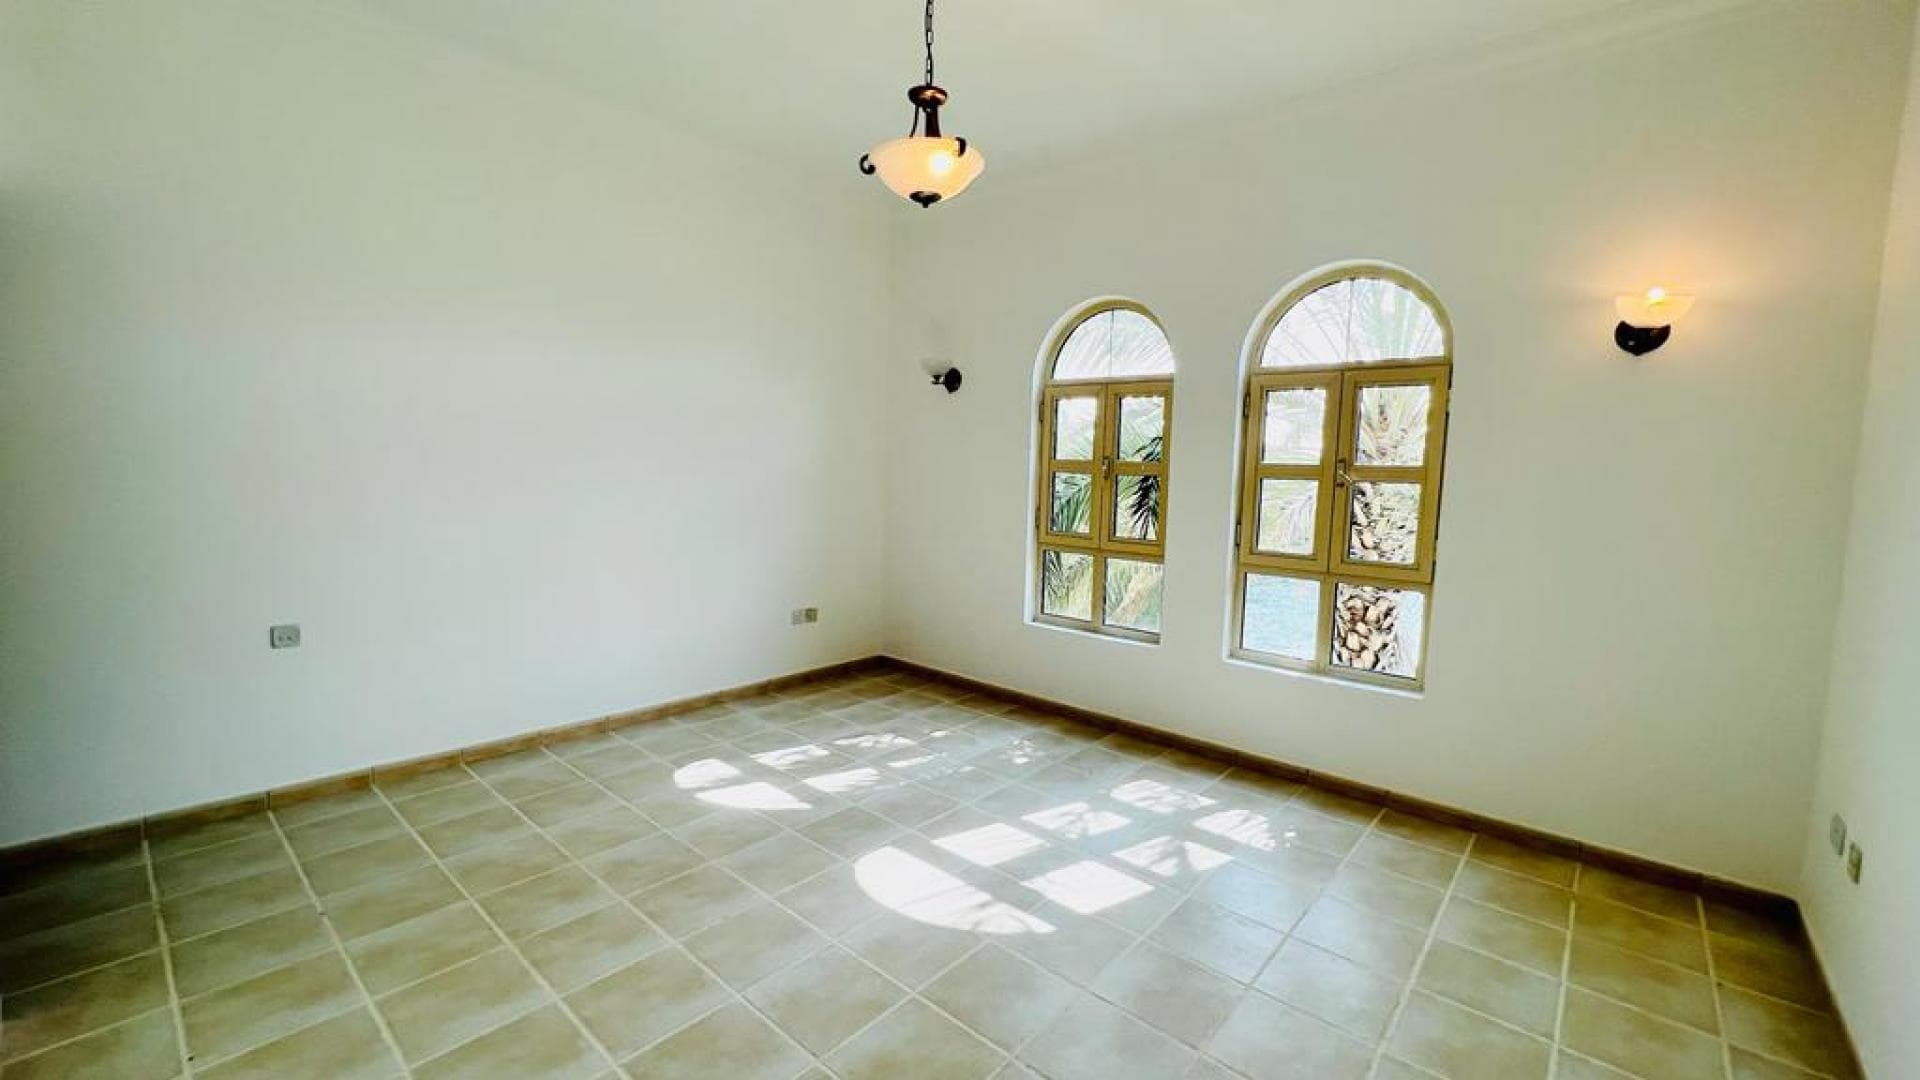 4 Bedroom Villa For Rent Al Thamam 13 Lp18938 27e498869b1c6600.jpeg